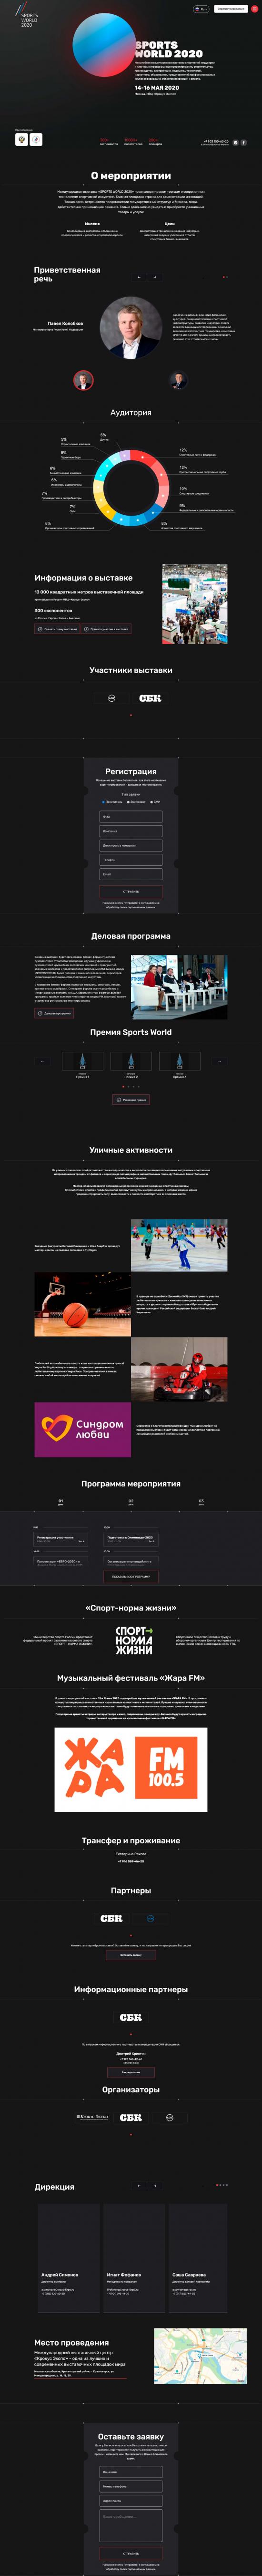 Versión regular del sitio Exposición y conferencia Sports World 2020